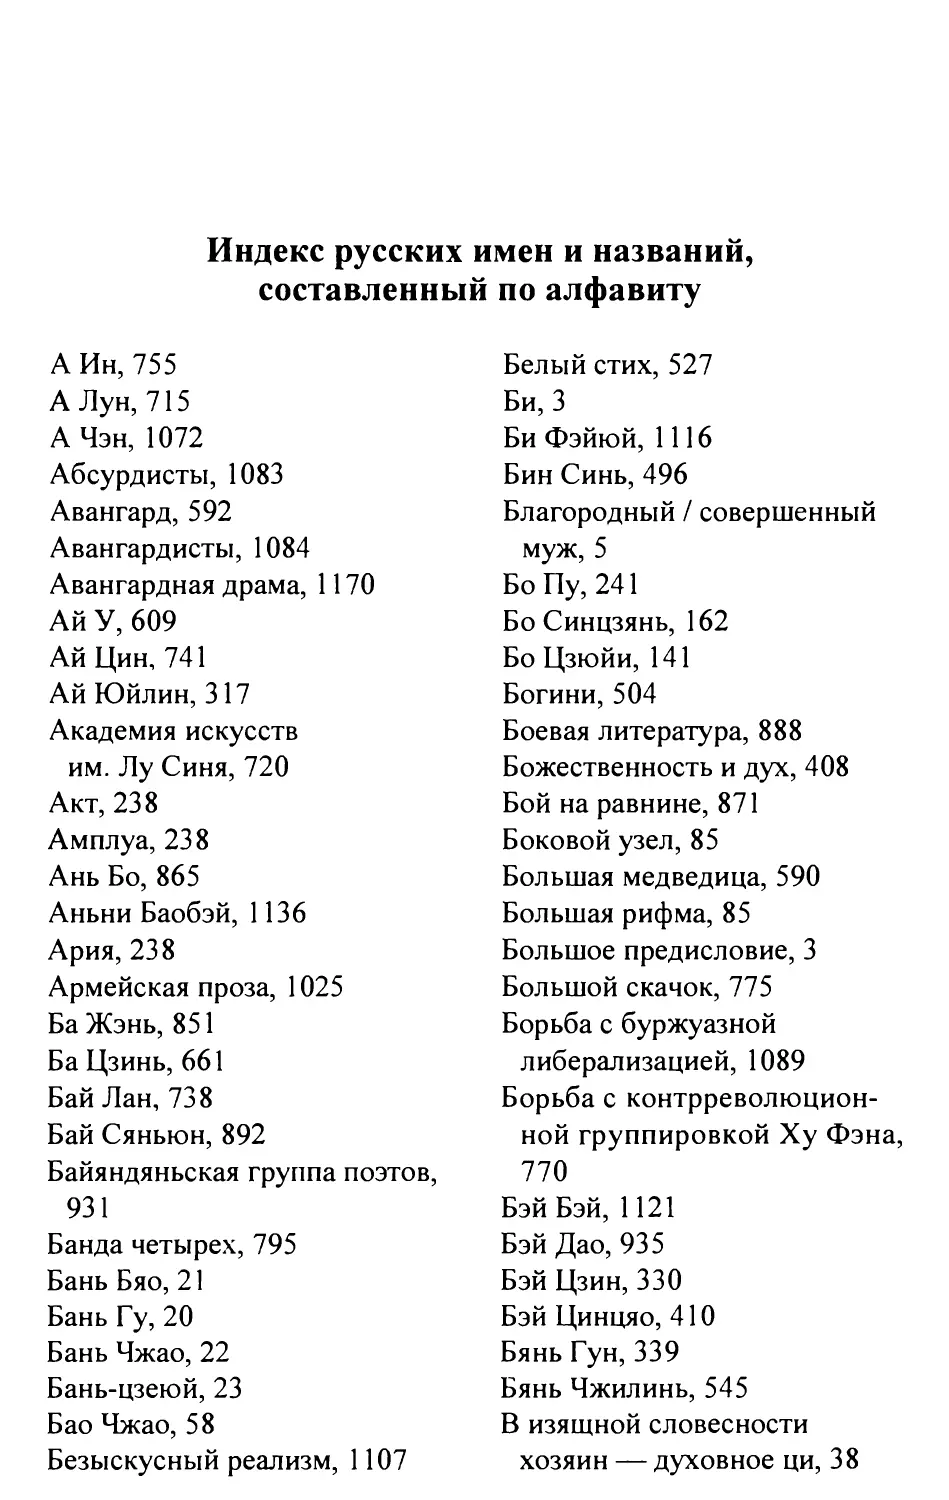 Индекс русских имен и названий, составленный по алфавиту